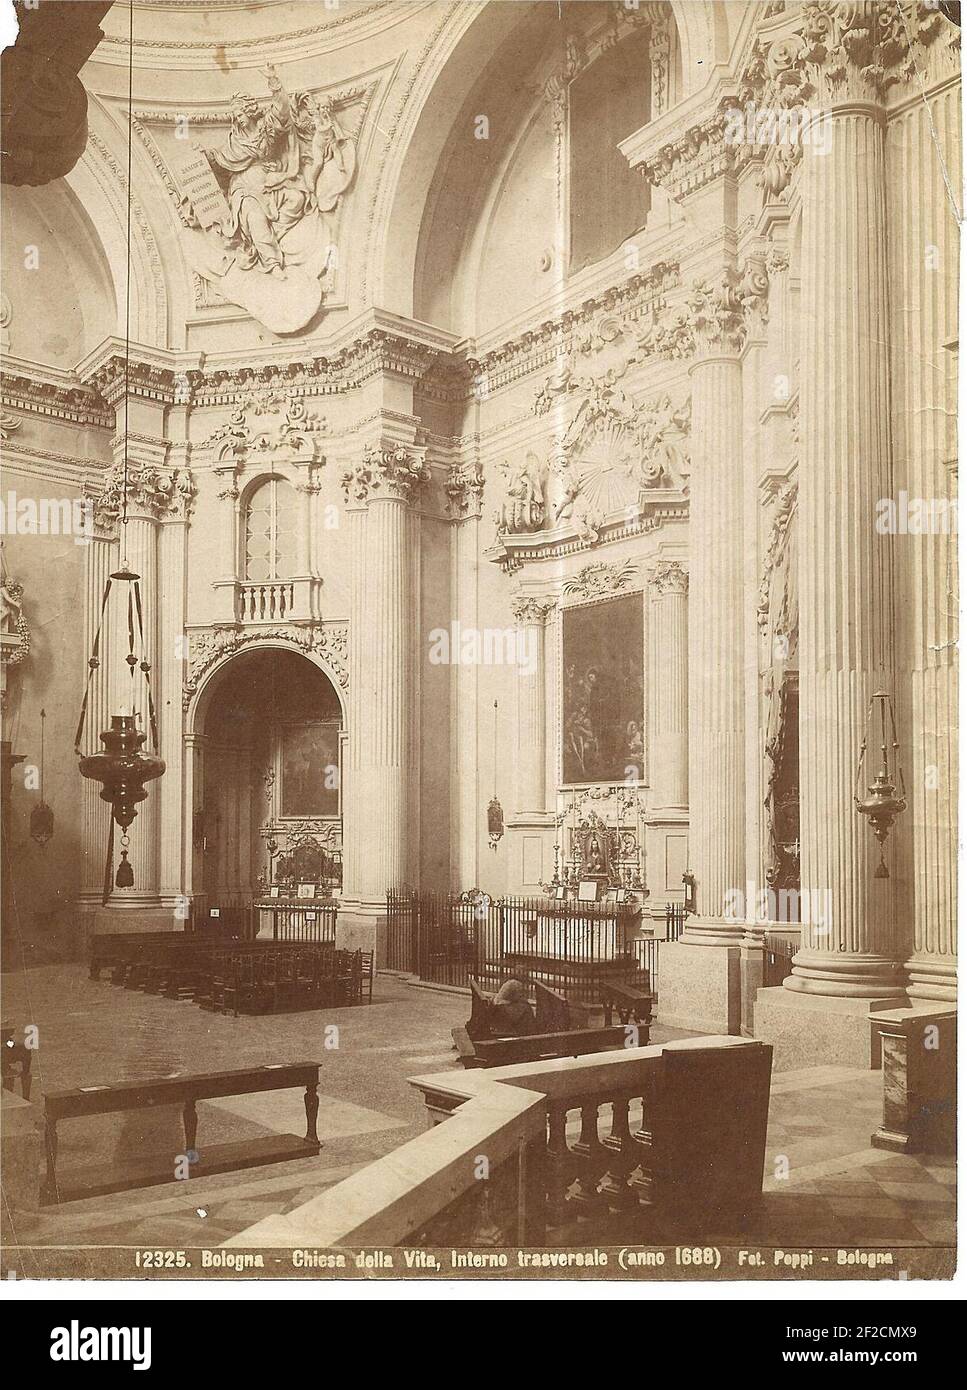 Poppi, Pietro (1833-1914) - n-12325-Bologna-Chiesa-della-Vita. Stock Photo